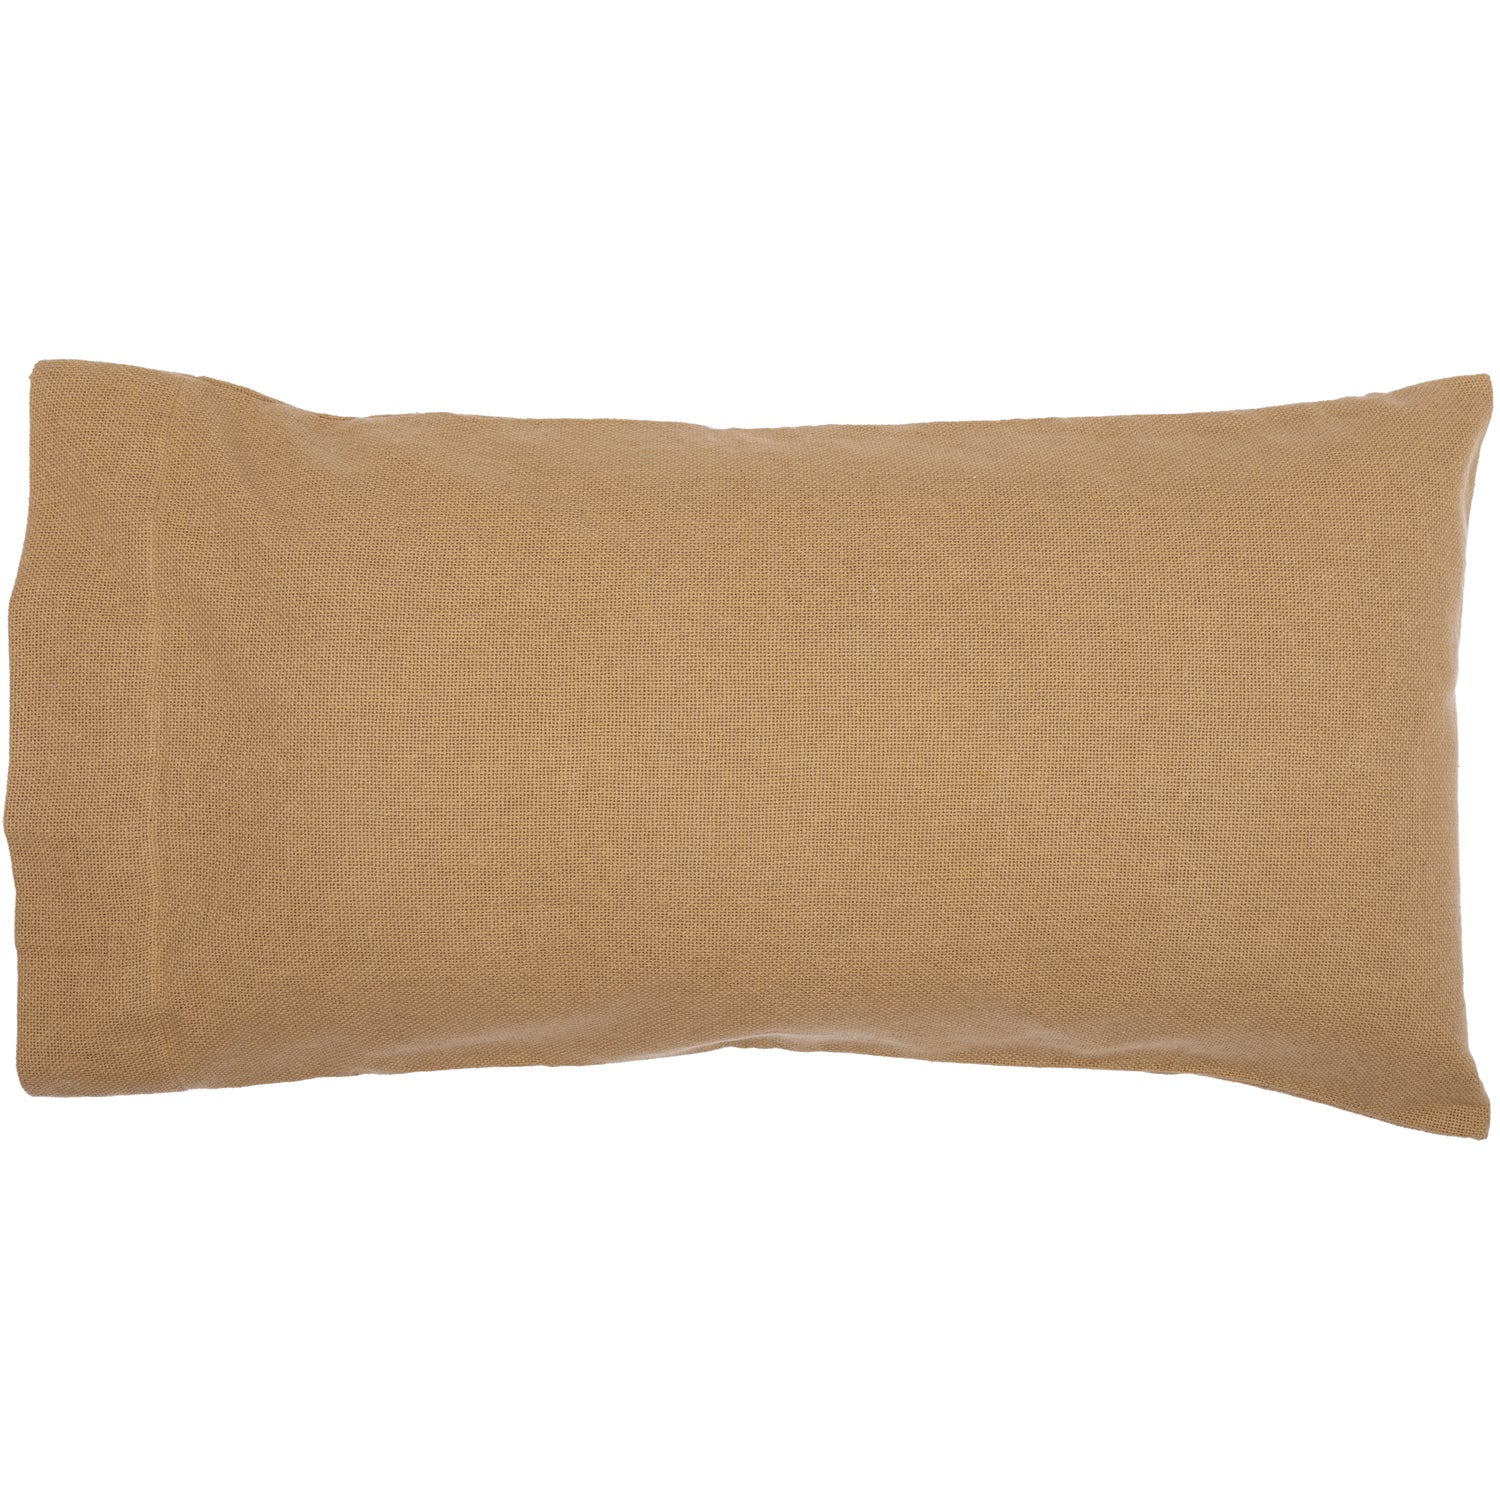 Burlap Natural King Pillow Case Set of 2 21x40